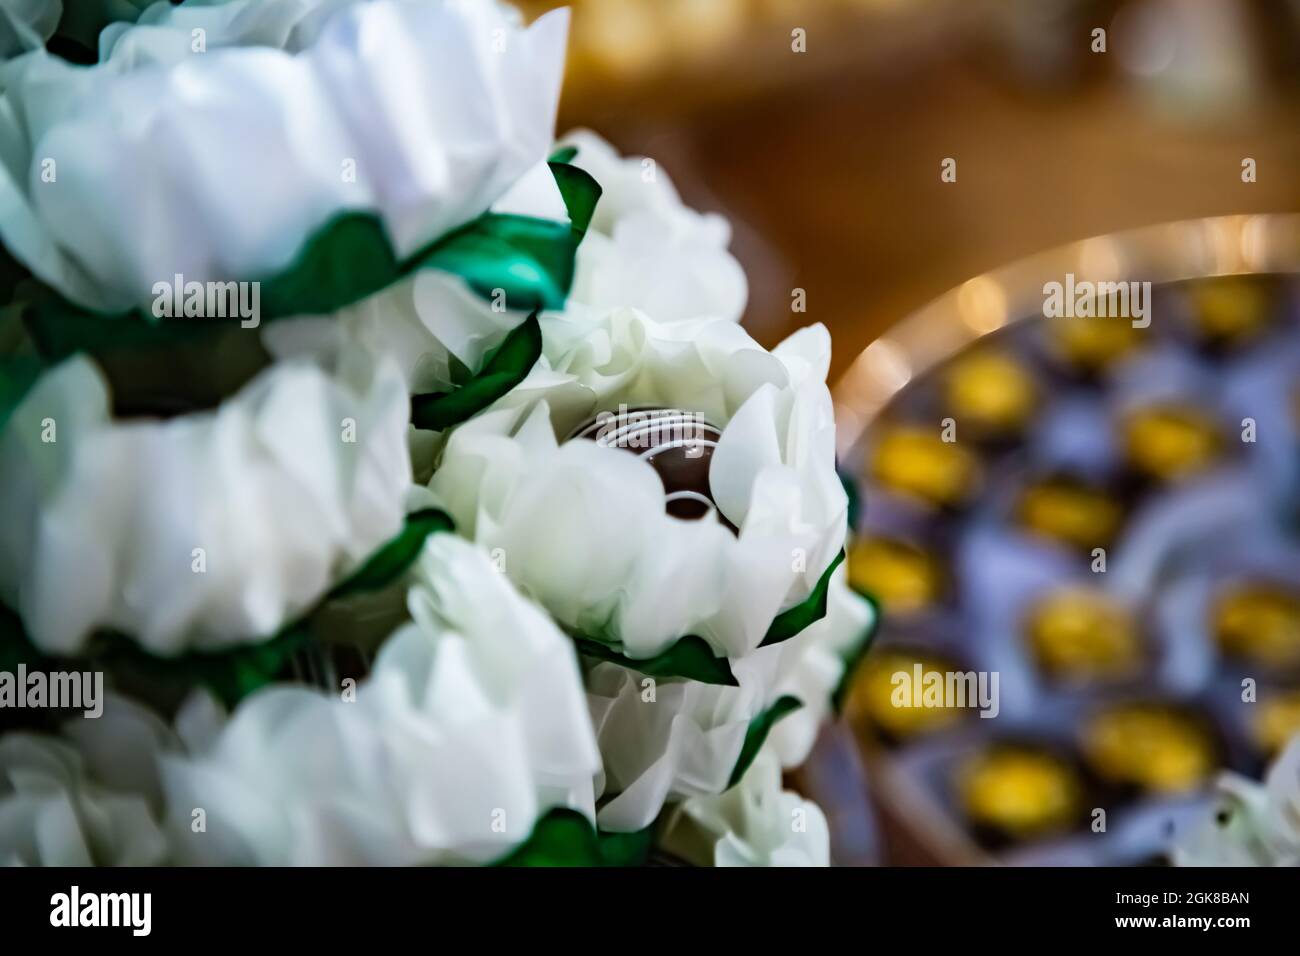 Embalagens em formato de flor, com um bombom dentro Stock Photo - Alamy